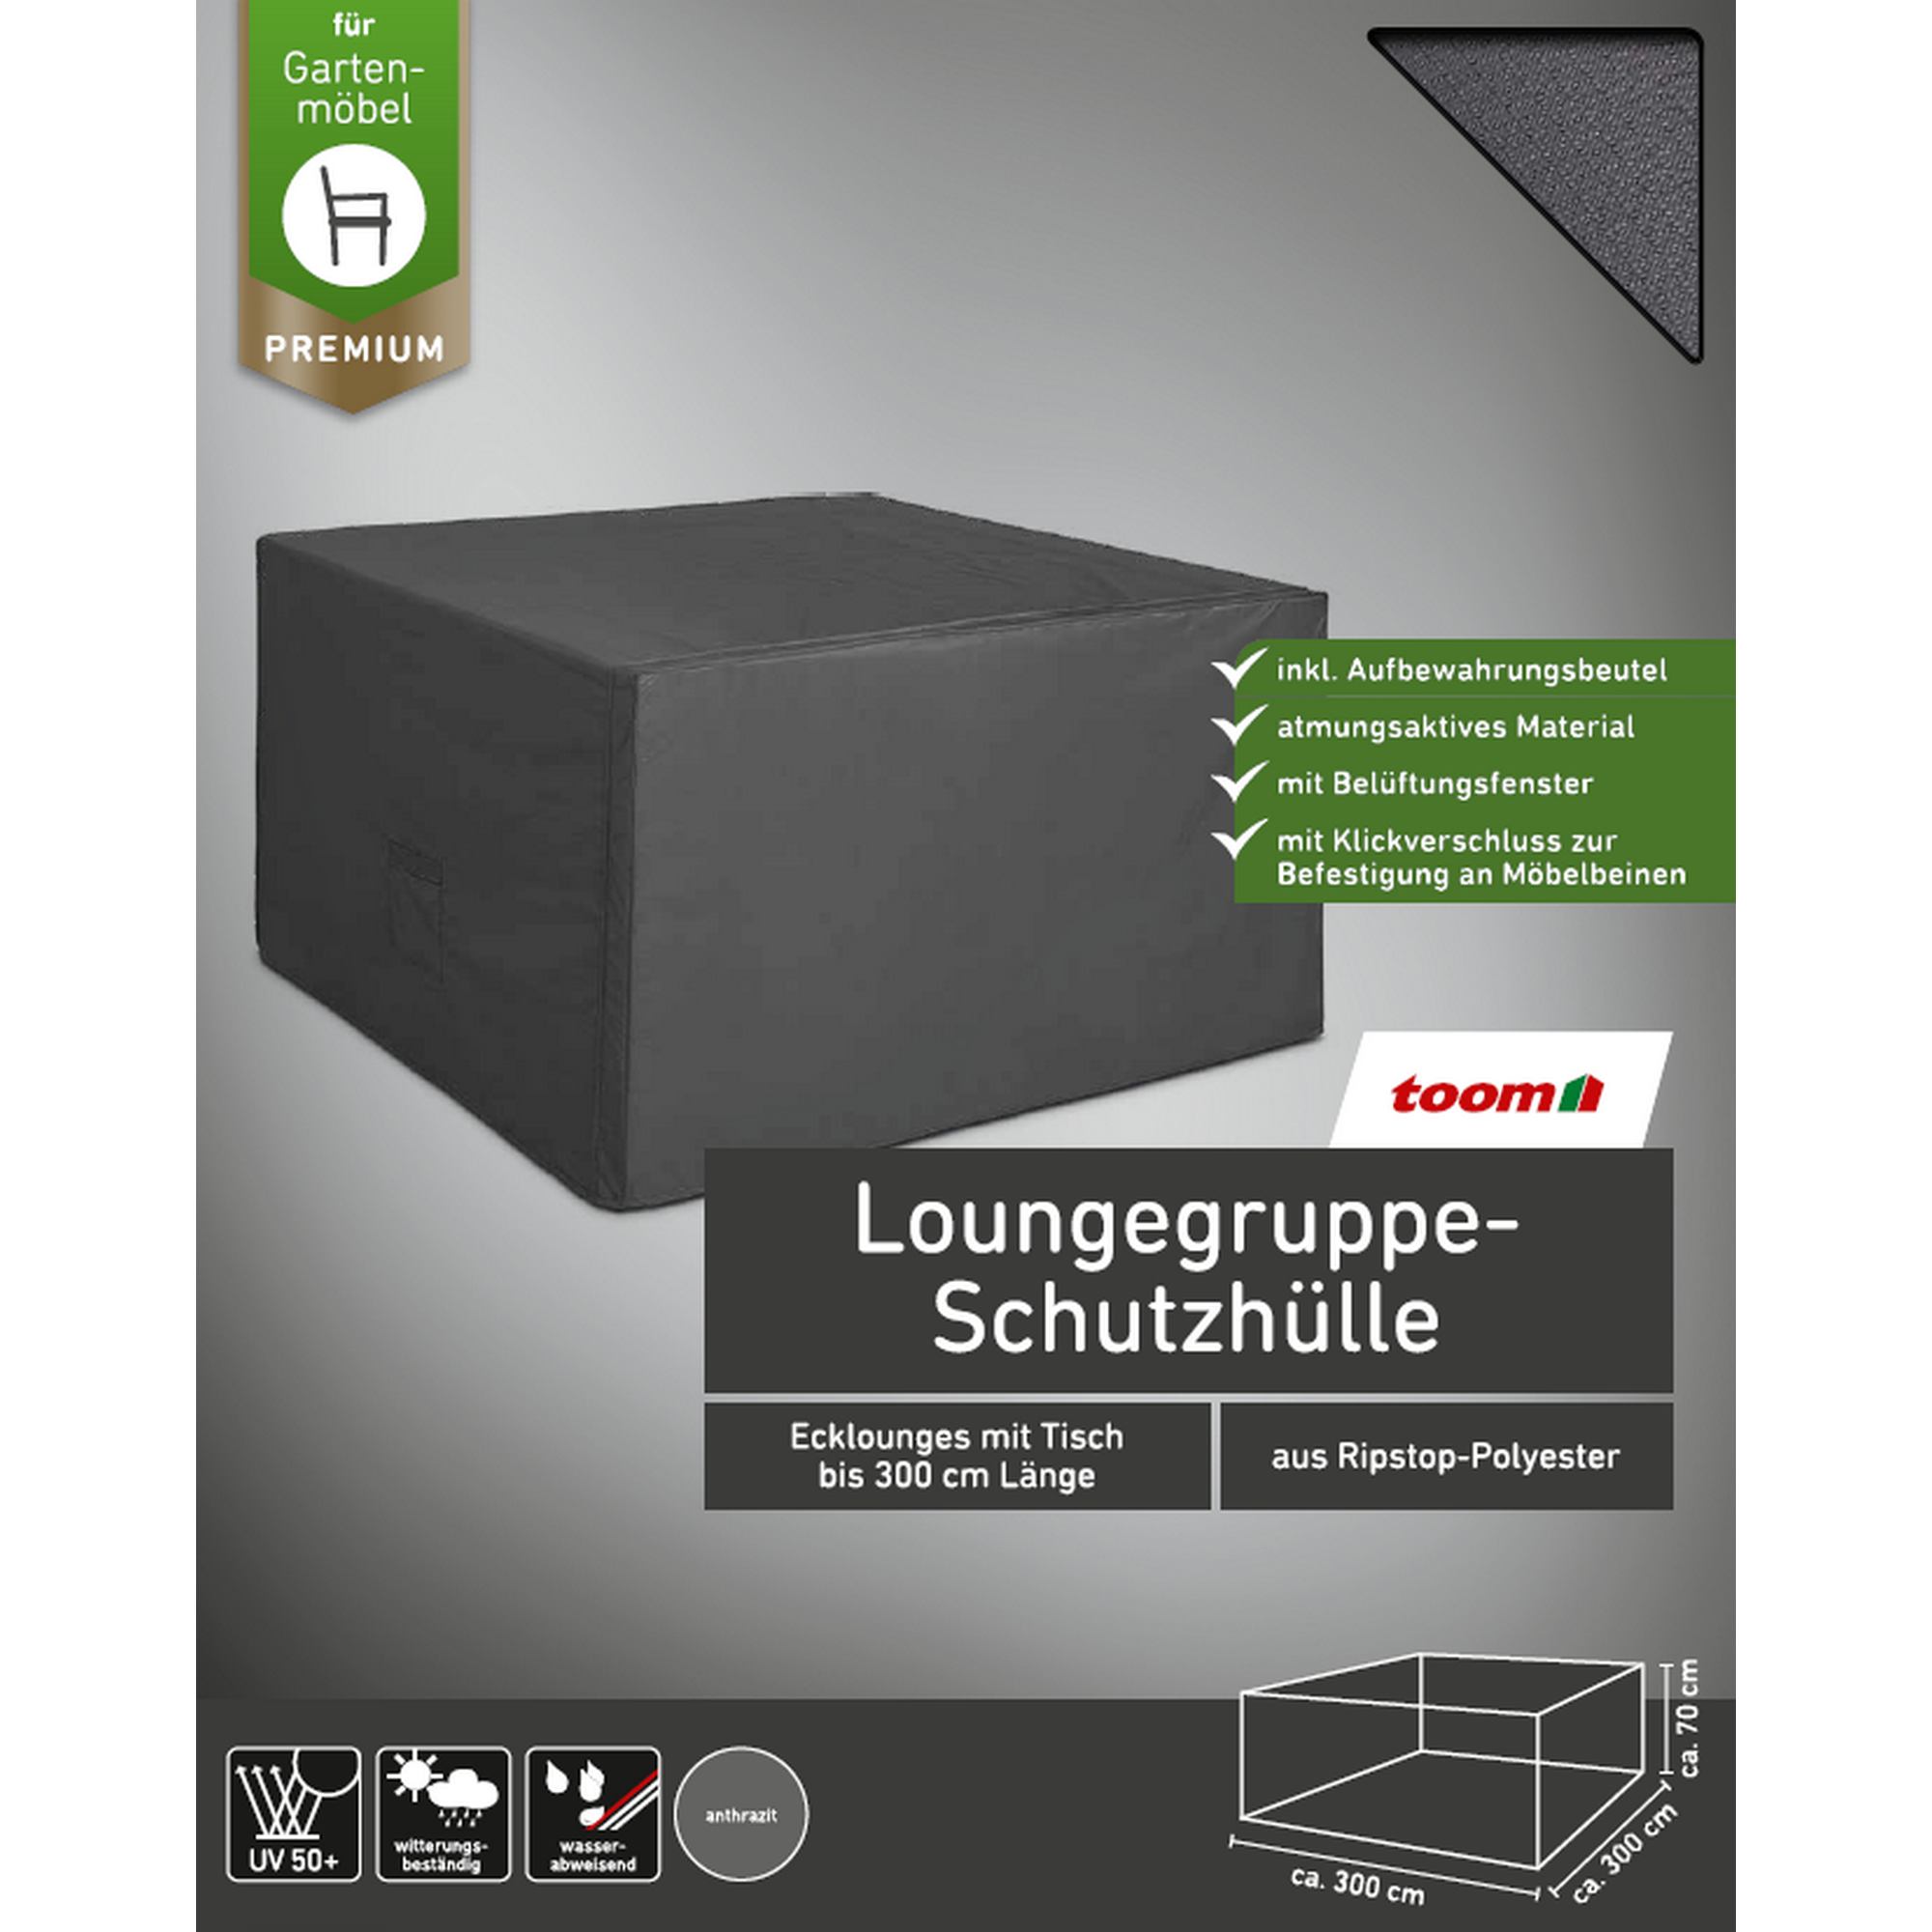 Premium-Schutzhülle für Loungegruppen bis 300 cm + product picture